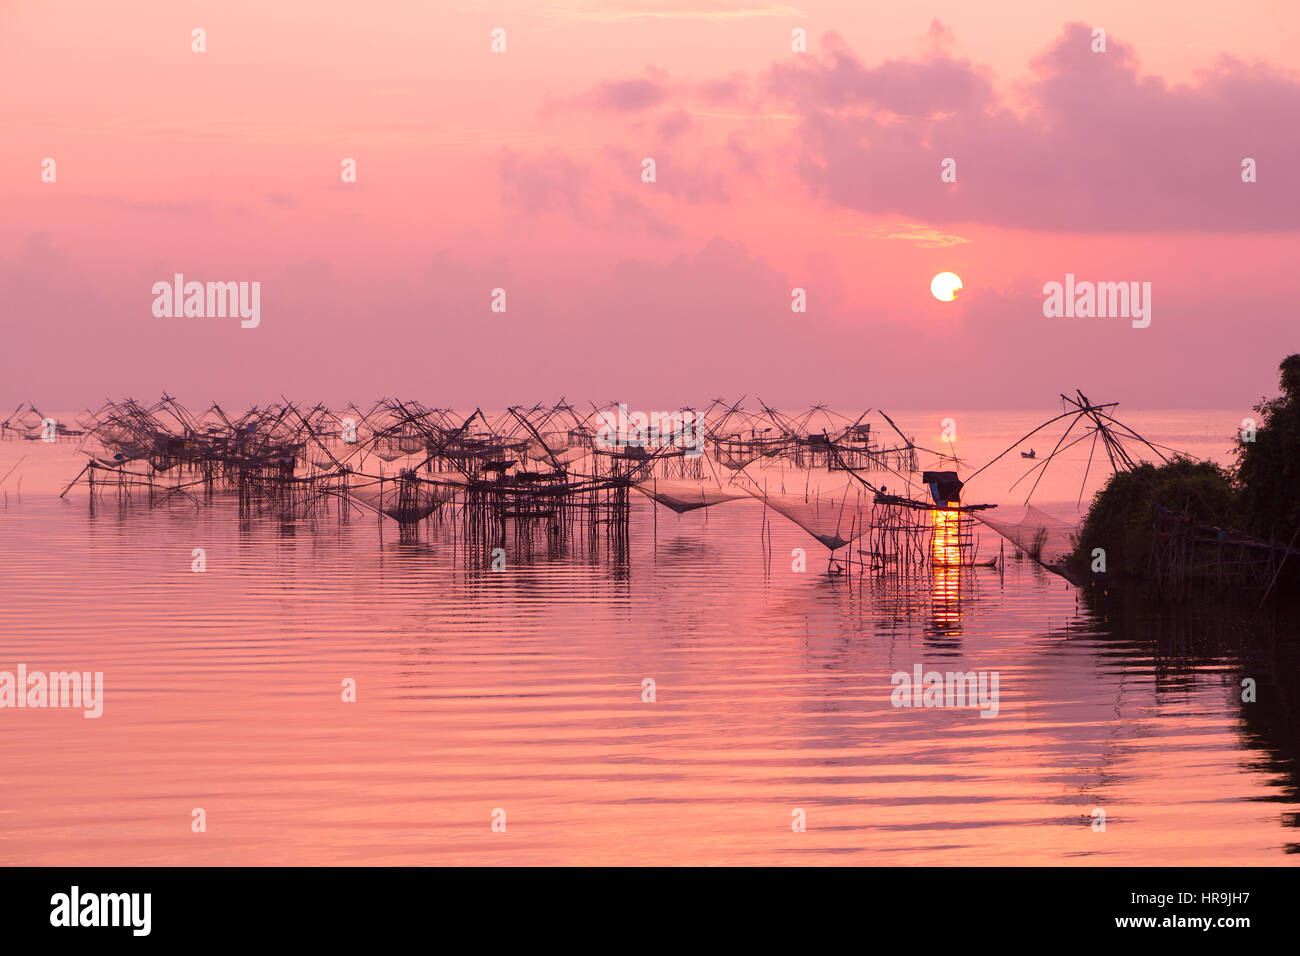 Les filets de pêche dans le lac dans la partie sud de la Thaïlande dans la lumière du matin chaud rose Banque D'Images